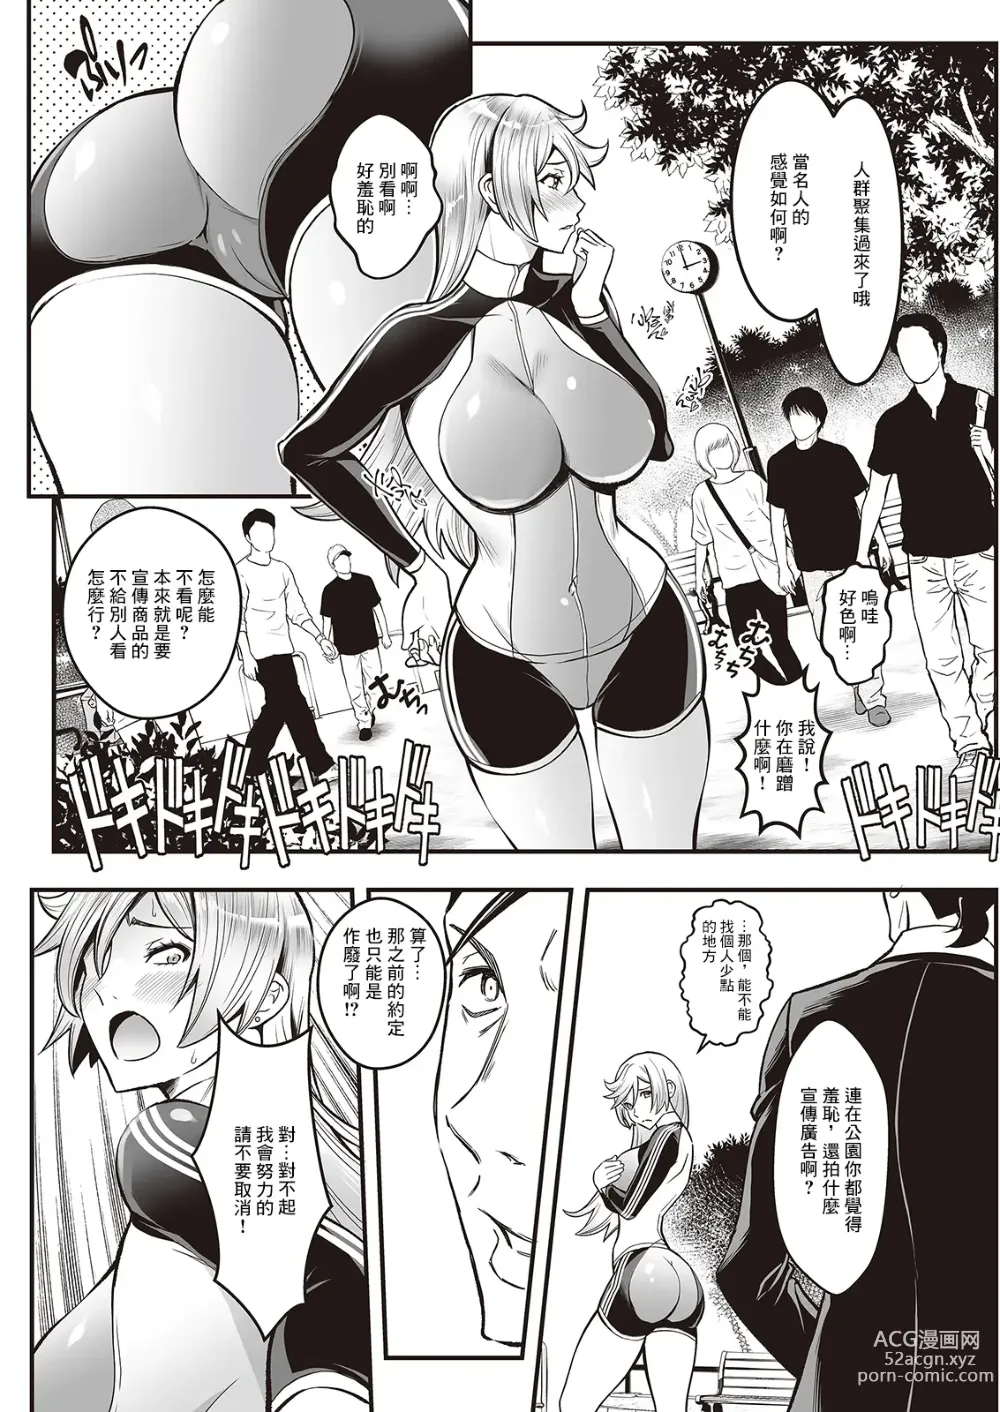 Page 6 of manga Sex de Kaiketsu Irojikake Kabushikigaisha Ch. 4